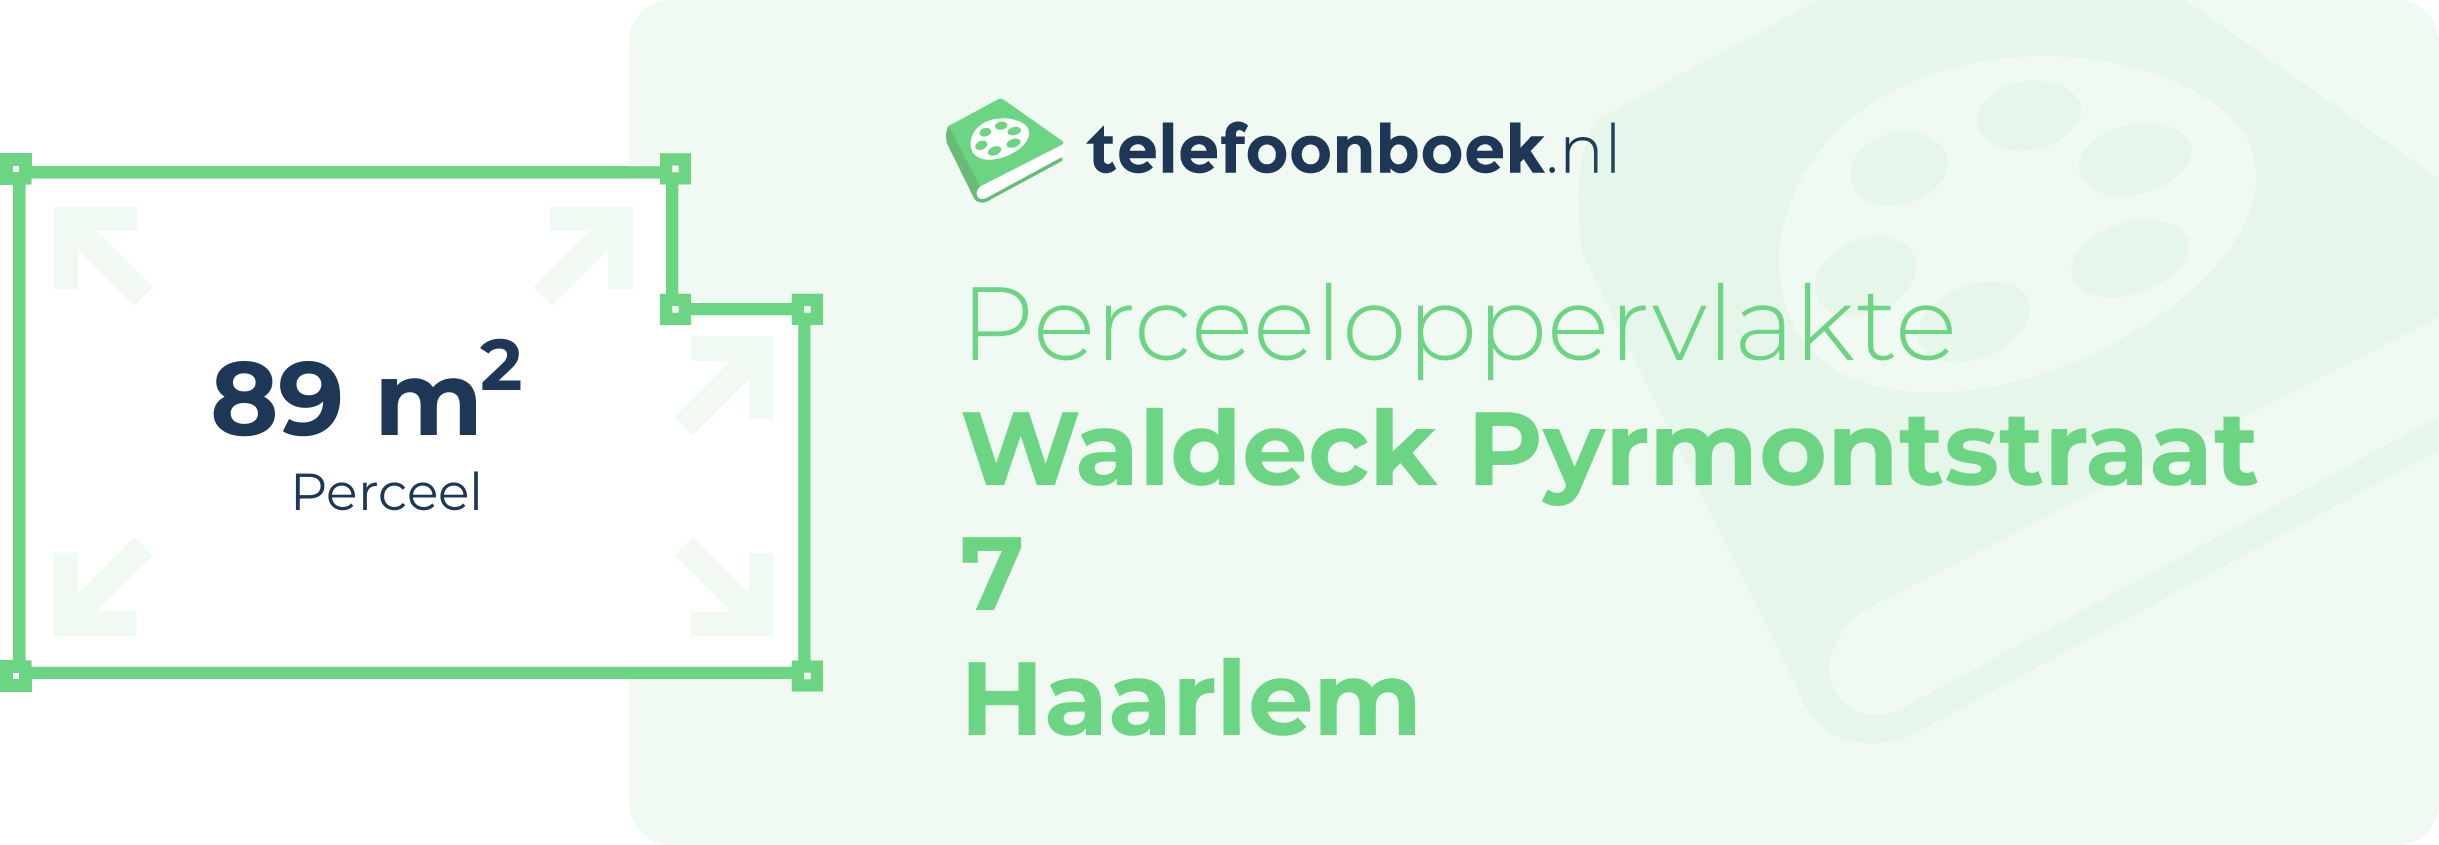 Perceeloppervlakte Waldeck Pyrmontstraat 7 Haarlem